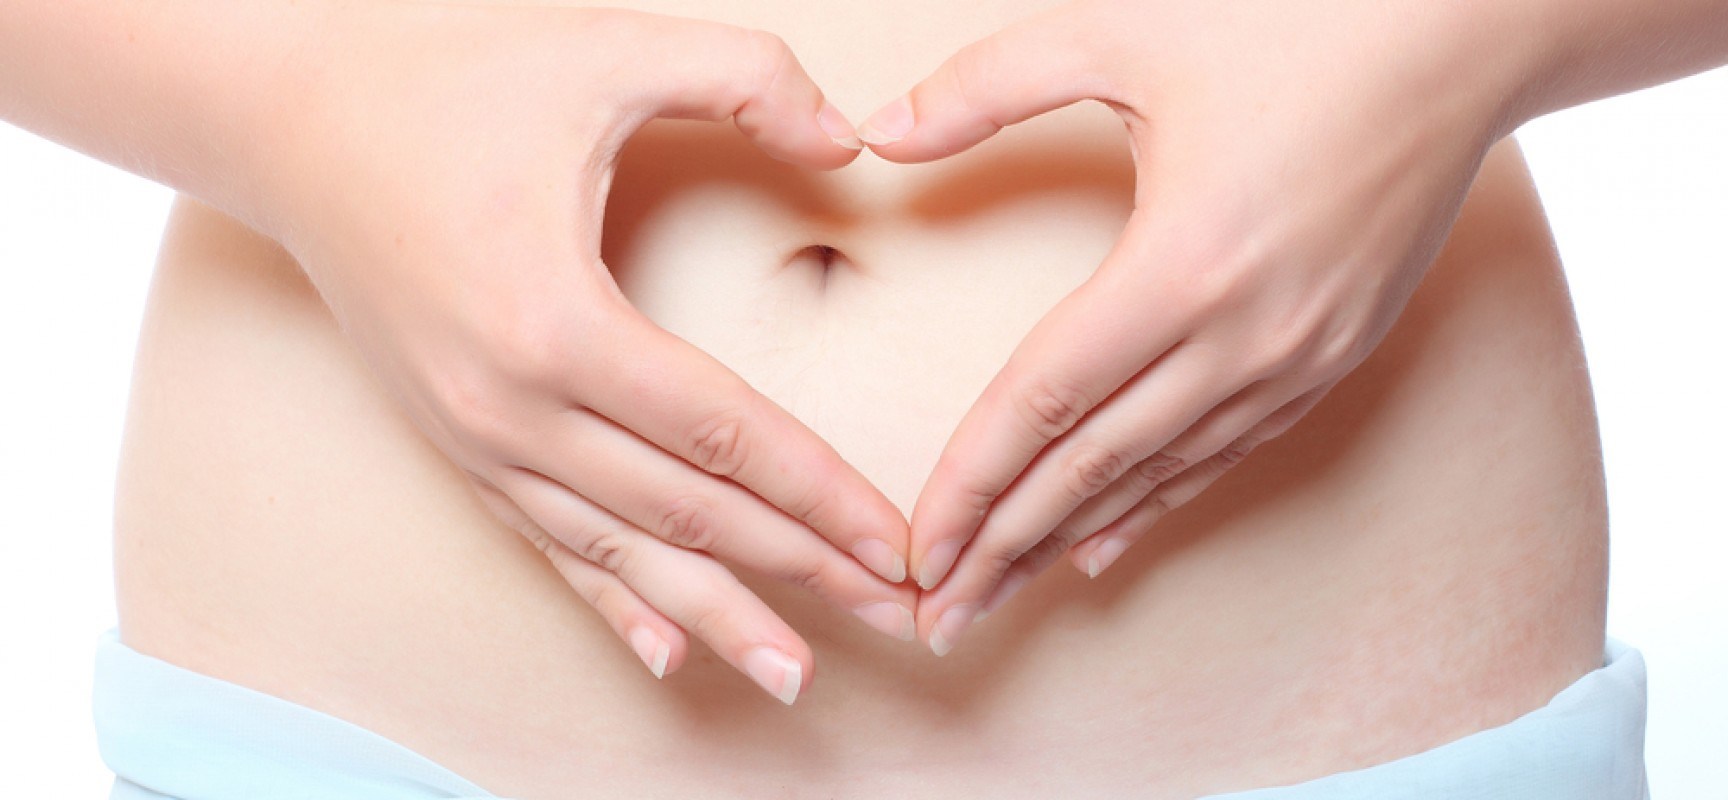 Algunas medidas preventivas contra el cáncer de ovario